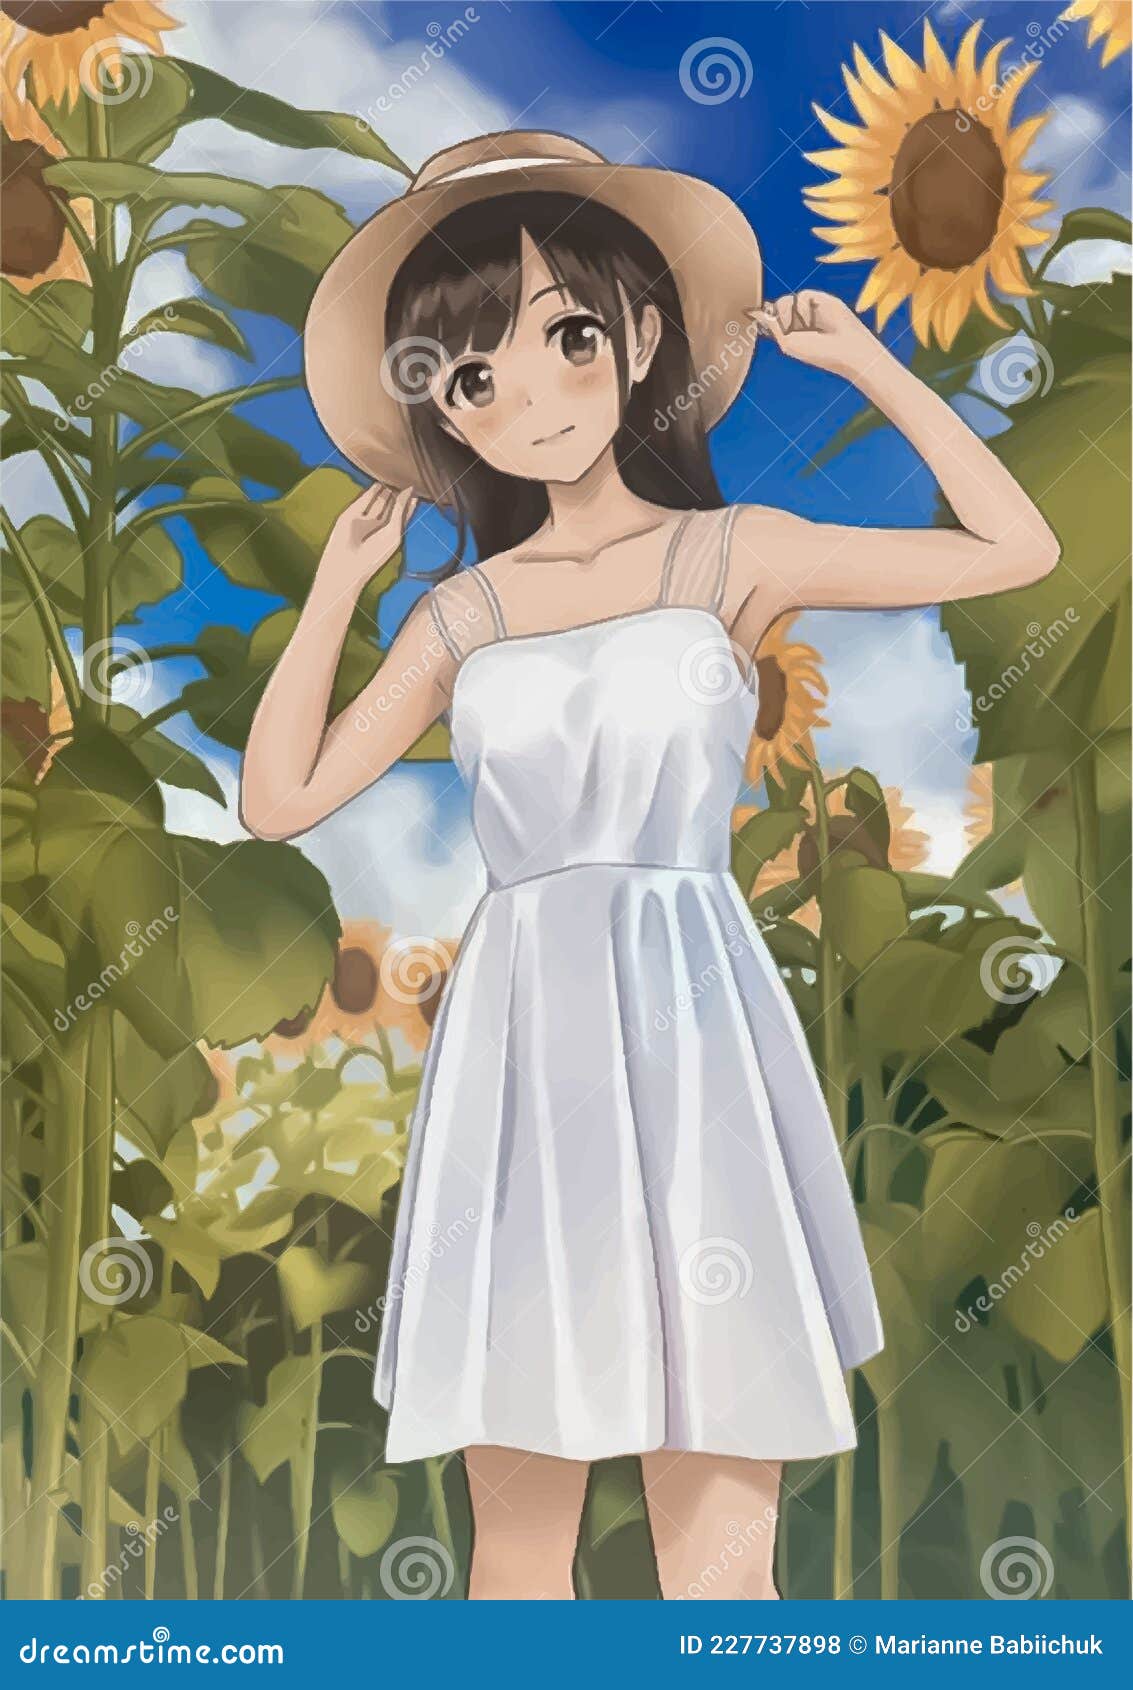 Một cô gái anime xinh đẹp đang đứng giữa những bông hoa hướng dương, tia nắng chiếu sáng cả khu vực xung quanh. Hình ảnh tươi vui, ngọt ngào này sẽ khiến bạn say đắm với thế giới anime.